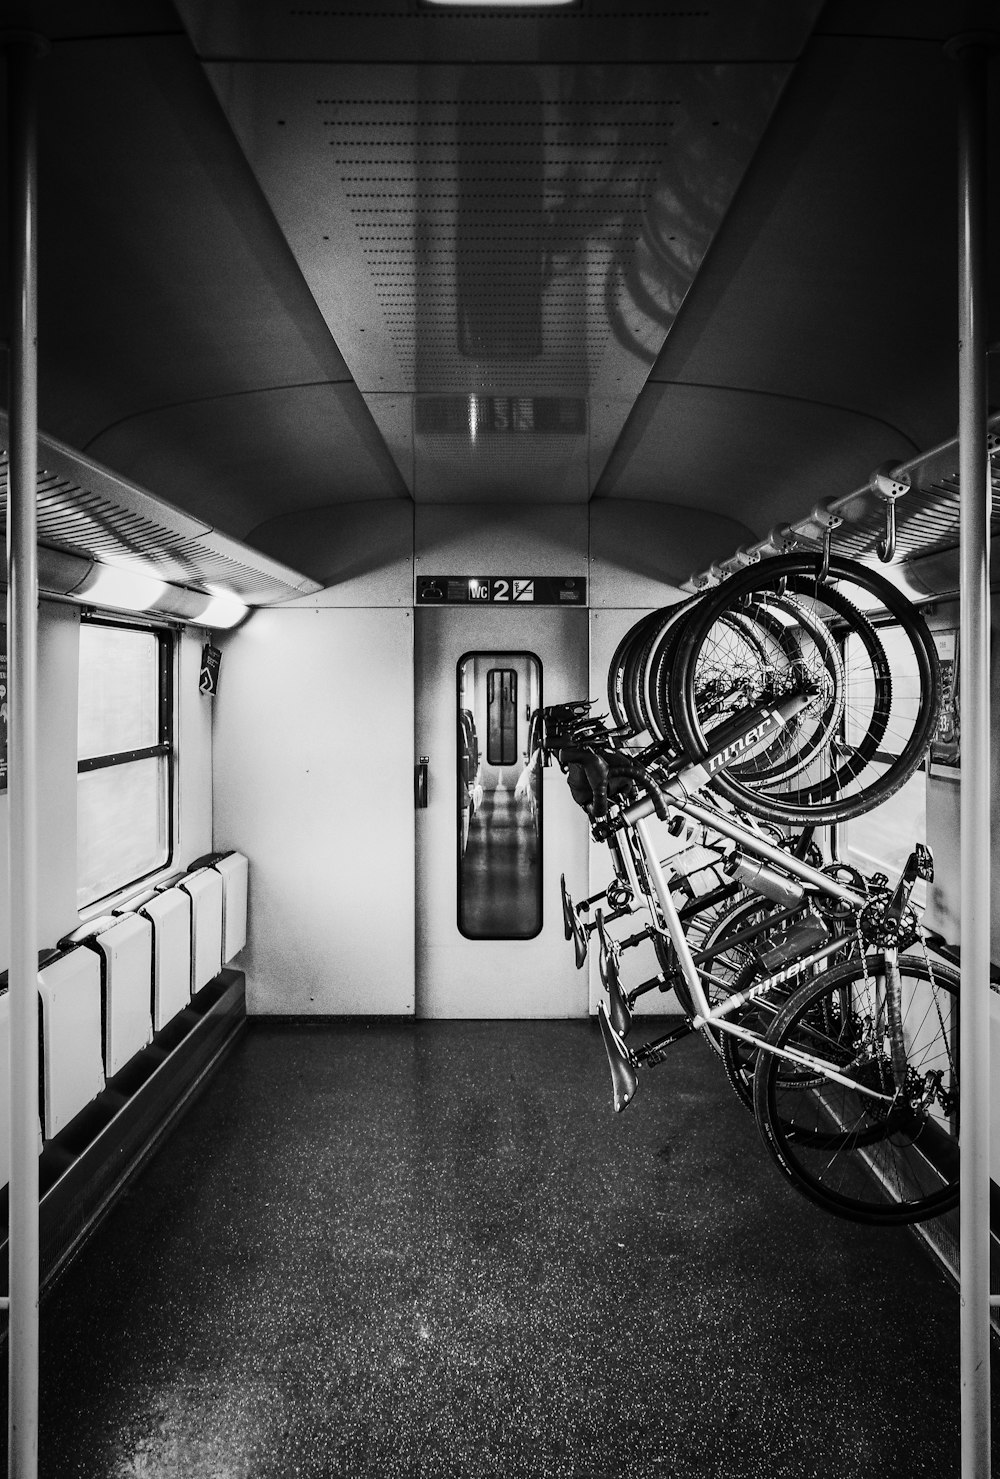 Photo en niveaux de gris de vélos sur porte-bagages